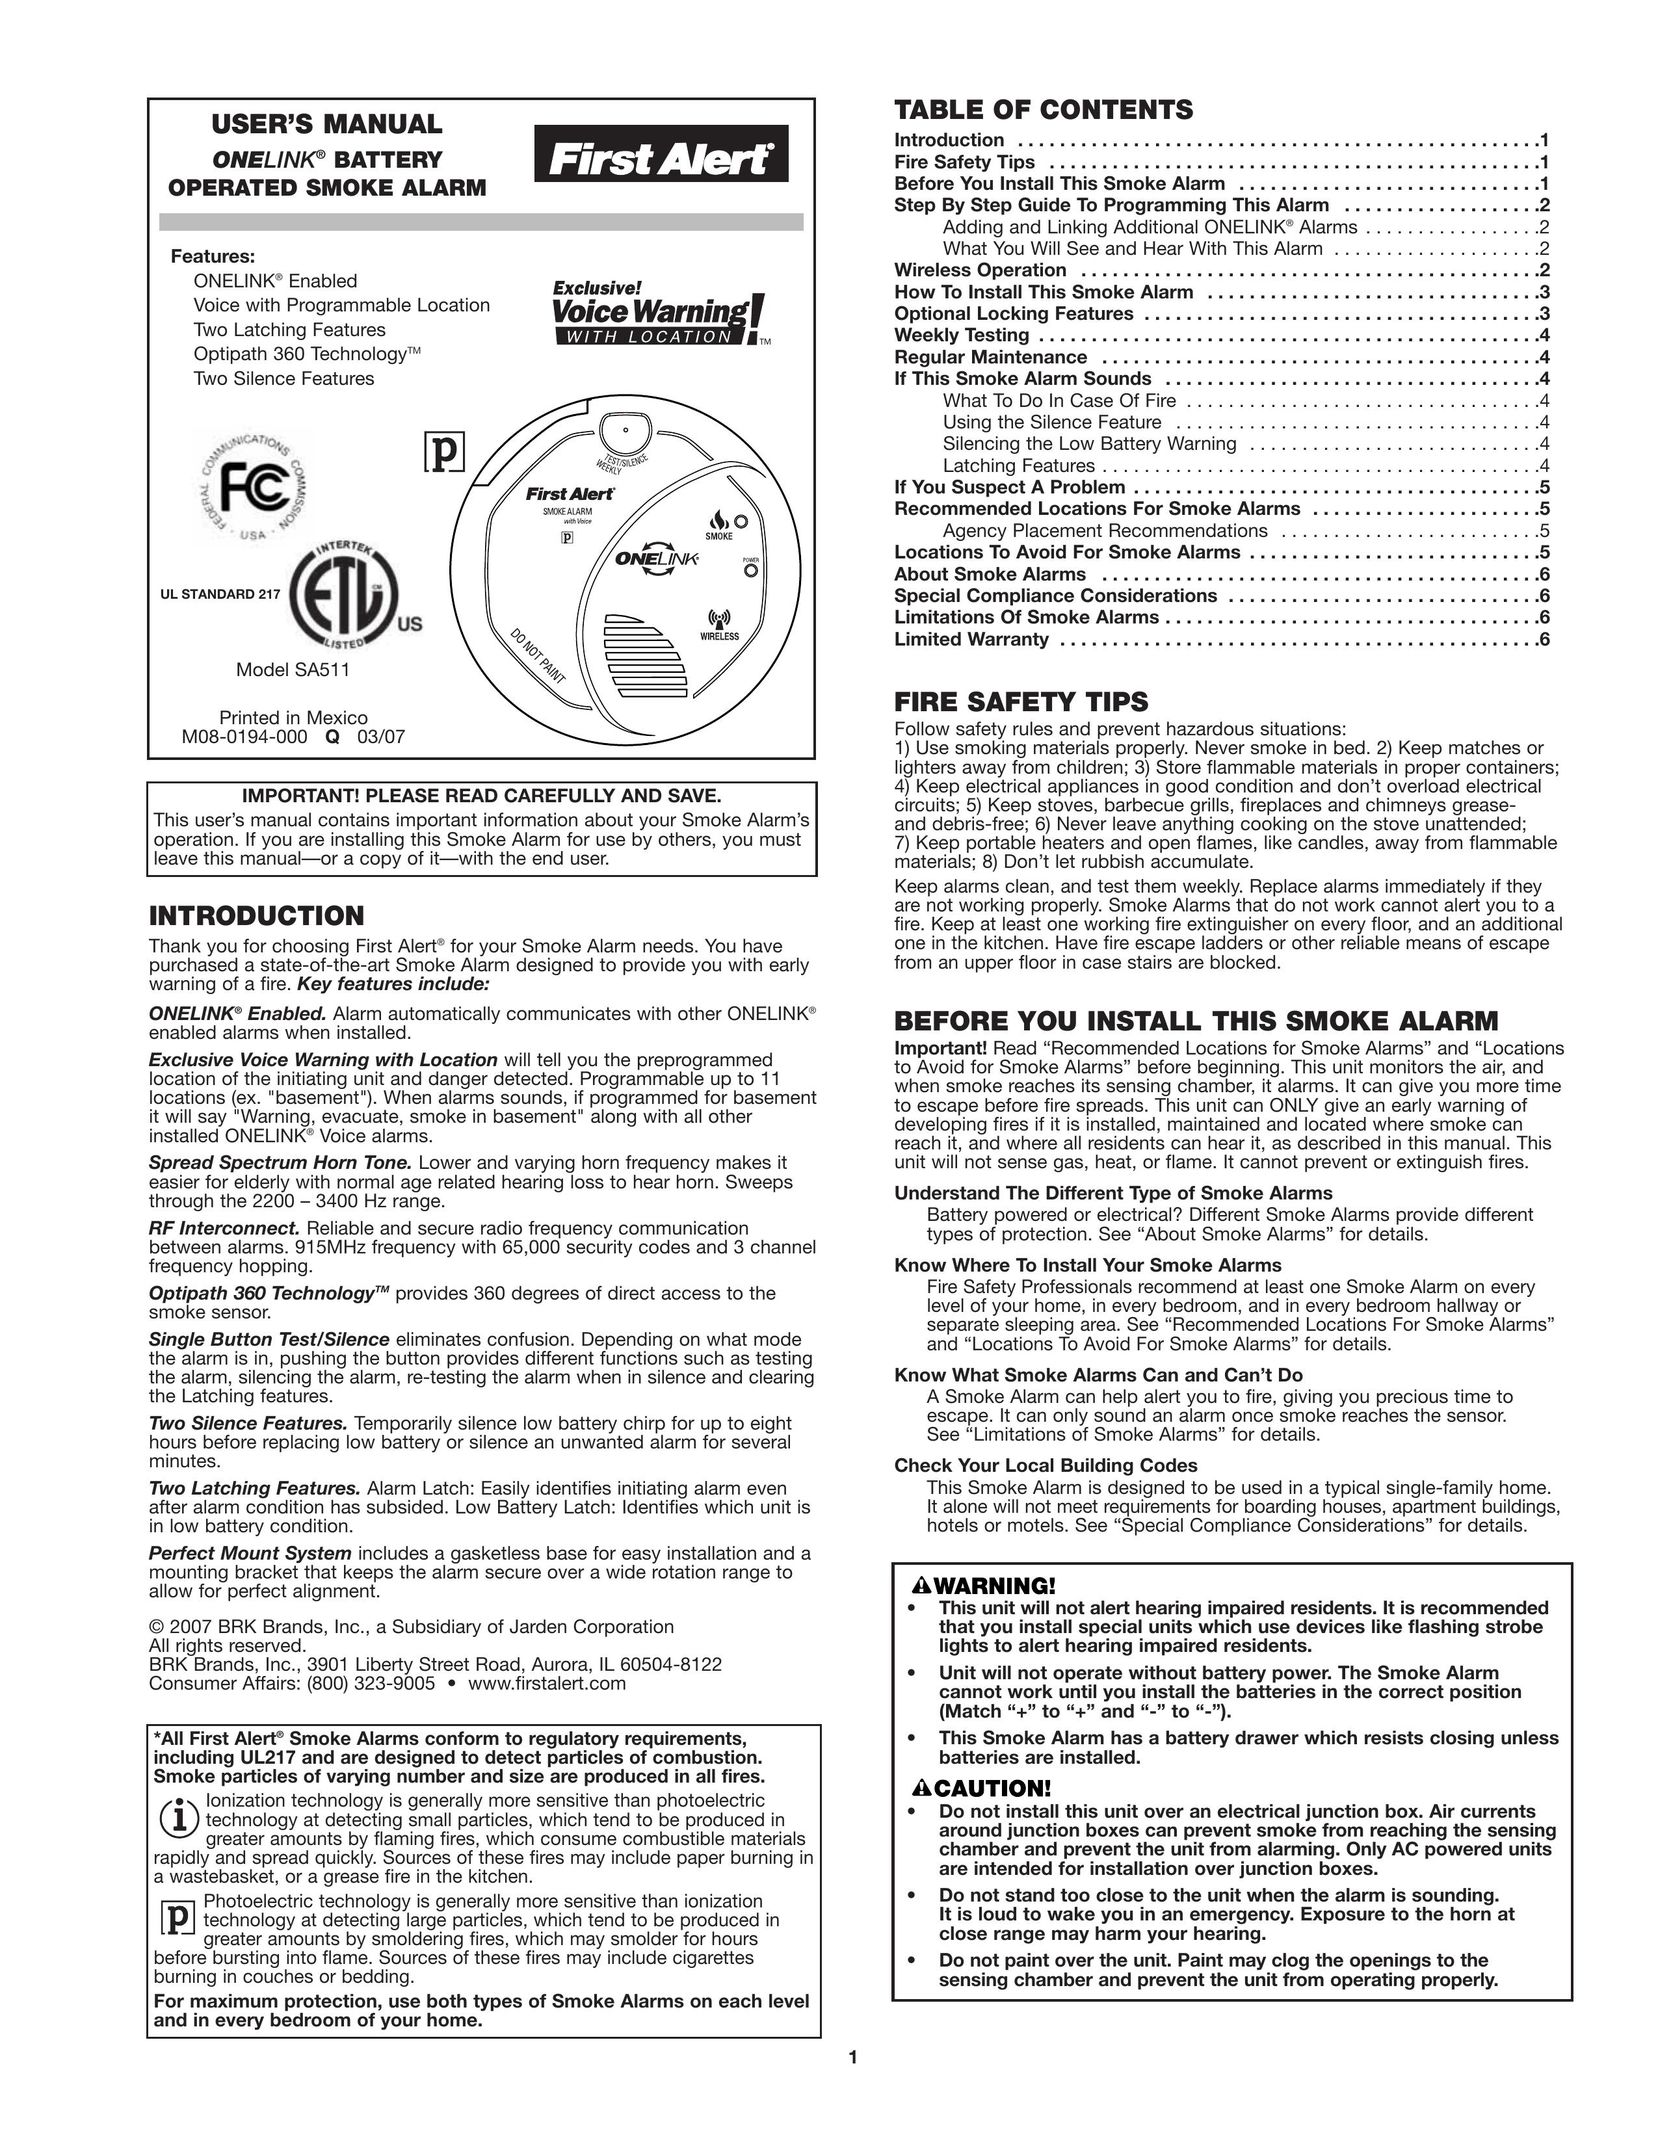 First Alert SA511 Smoke Alarm User Manual